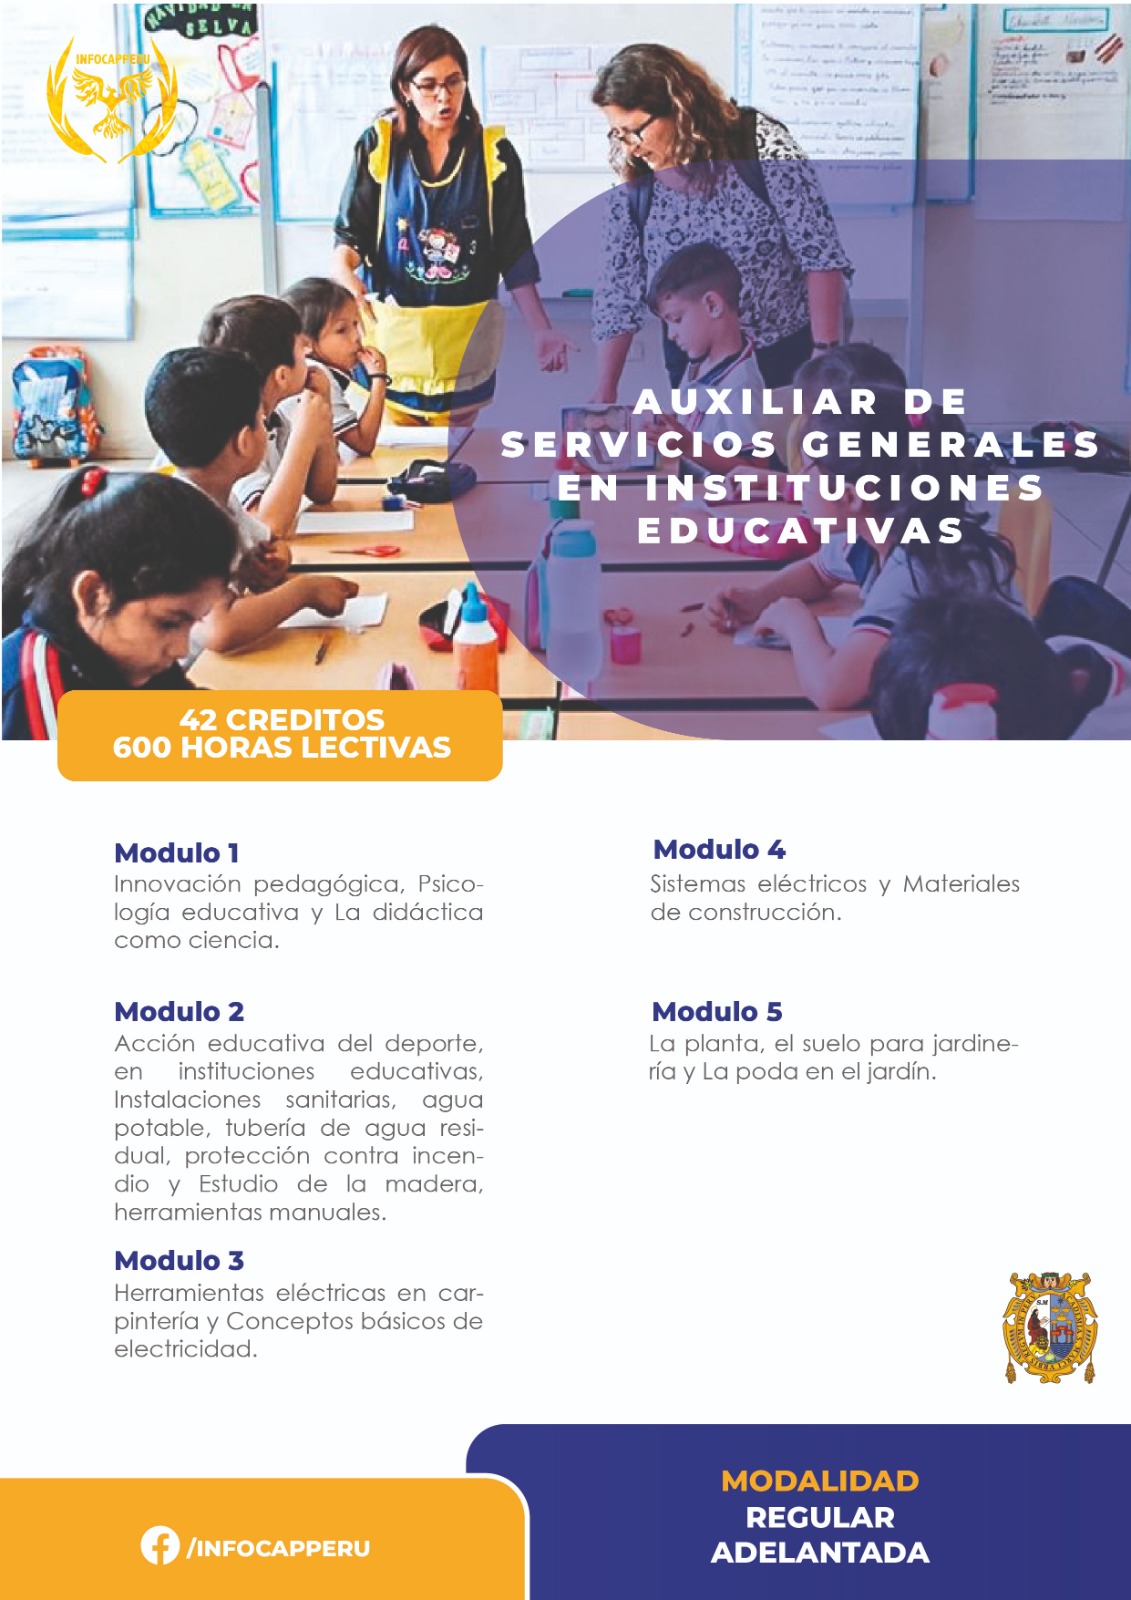 AUXILIAR DE SERVICIOS GENERALES EN INSTITUCIONES EDUCATIVAS